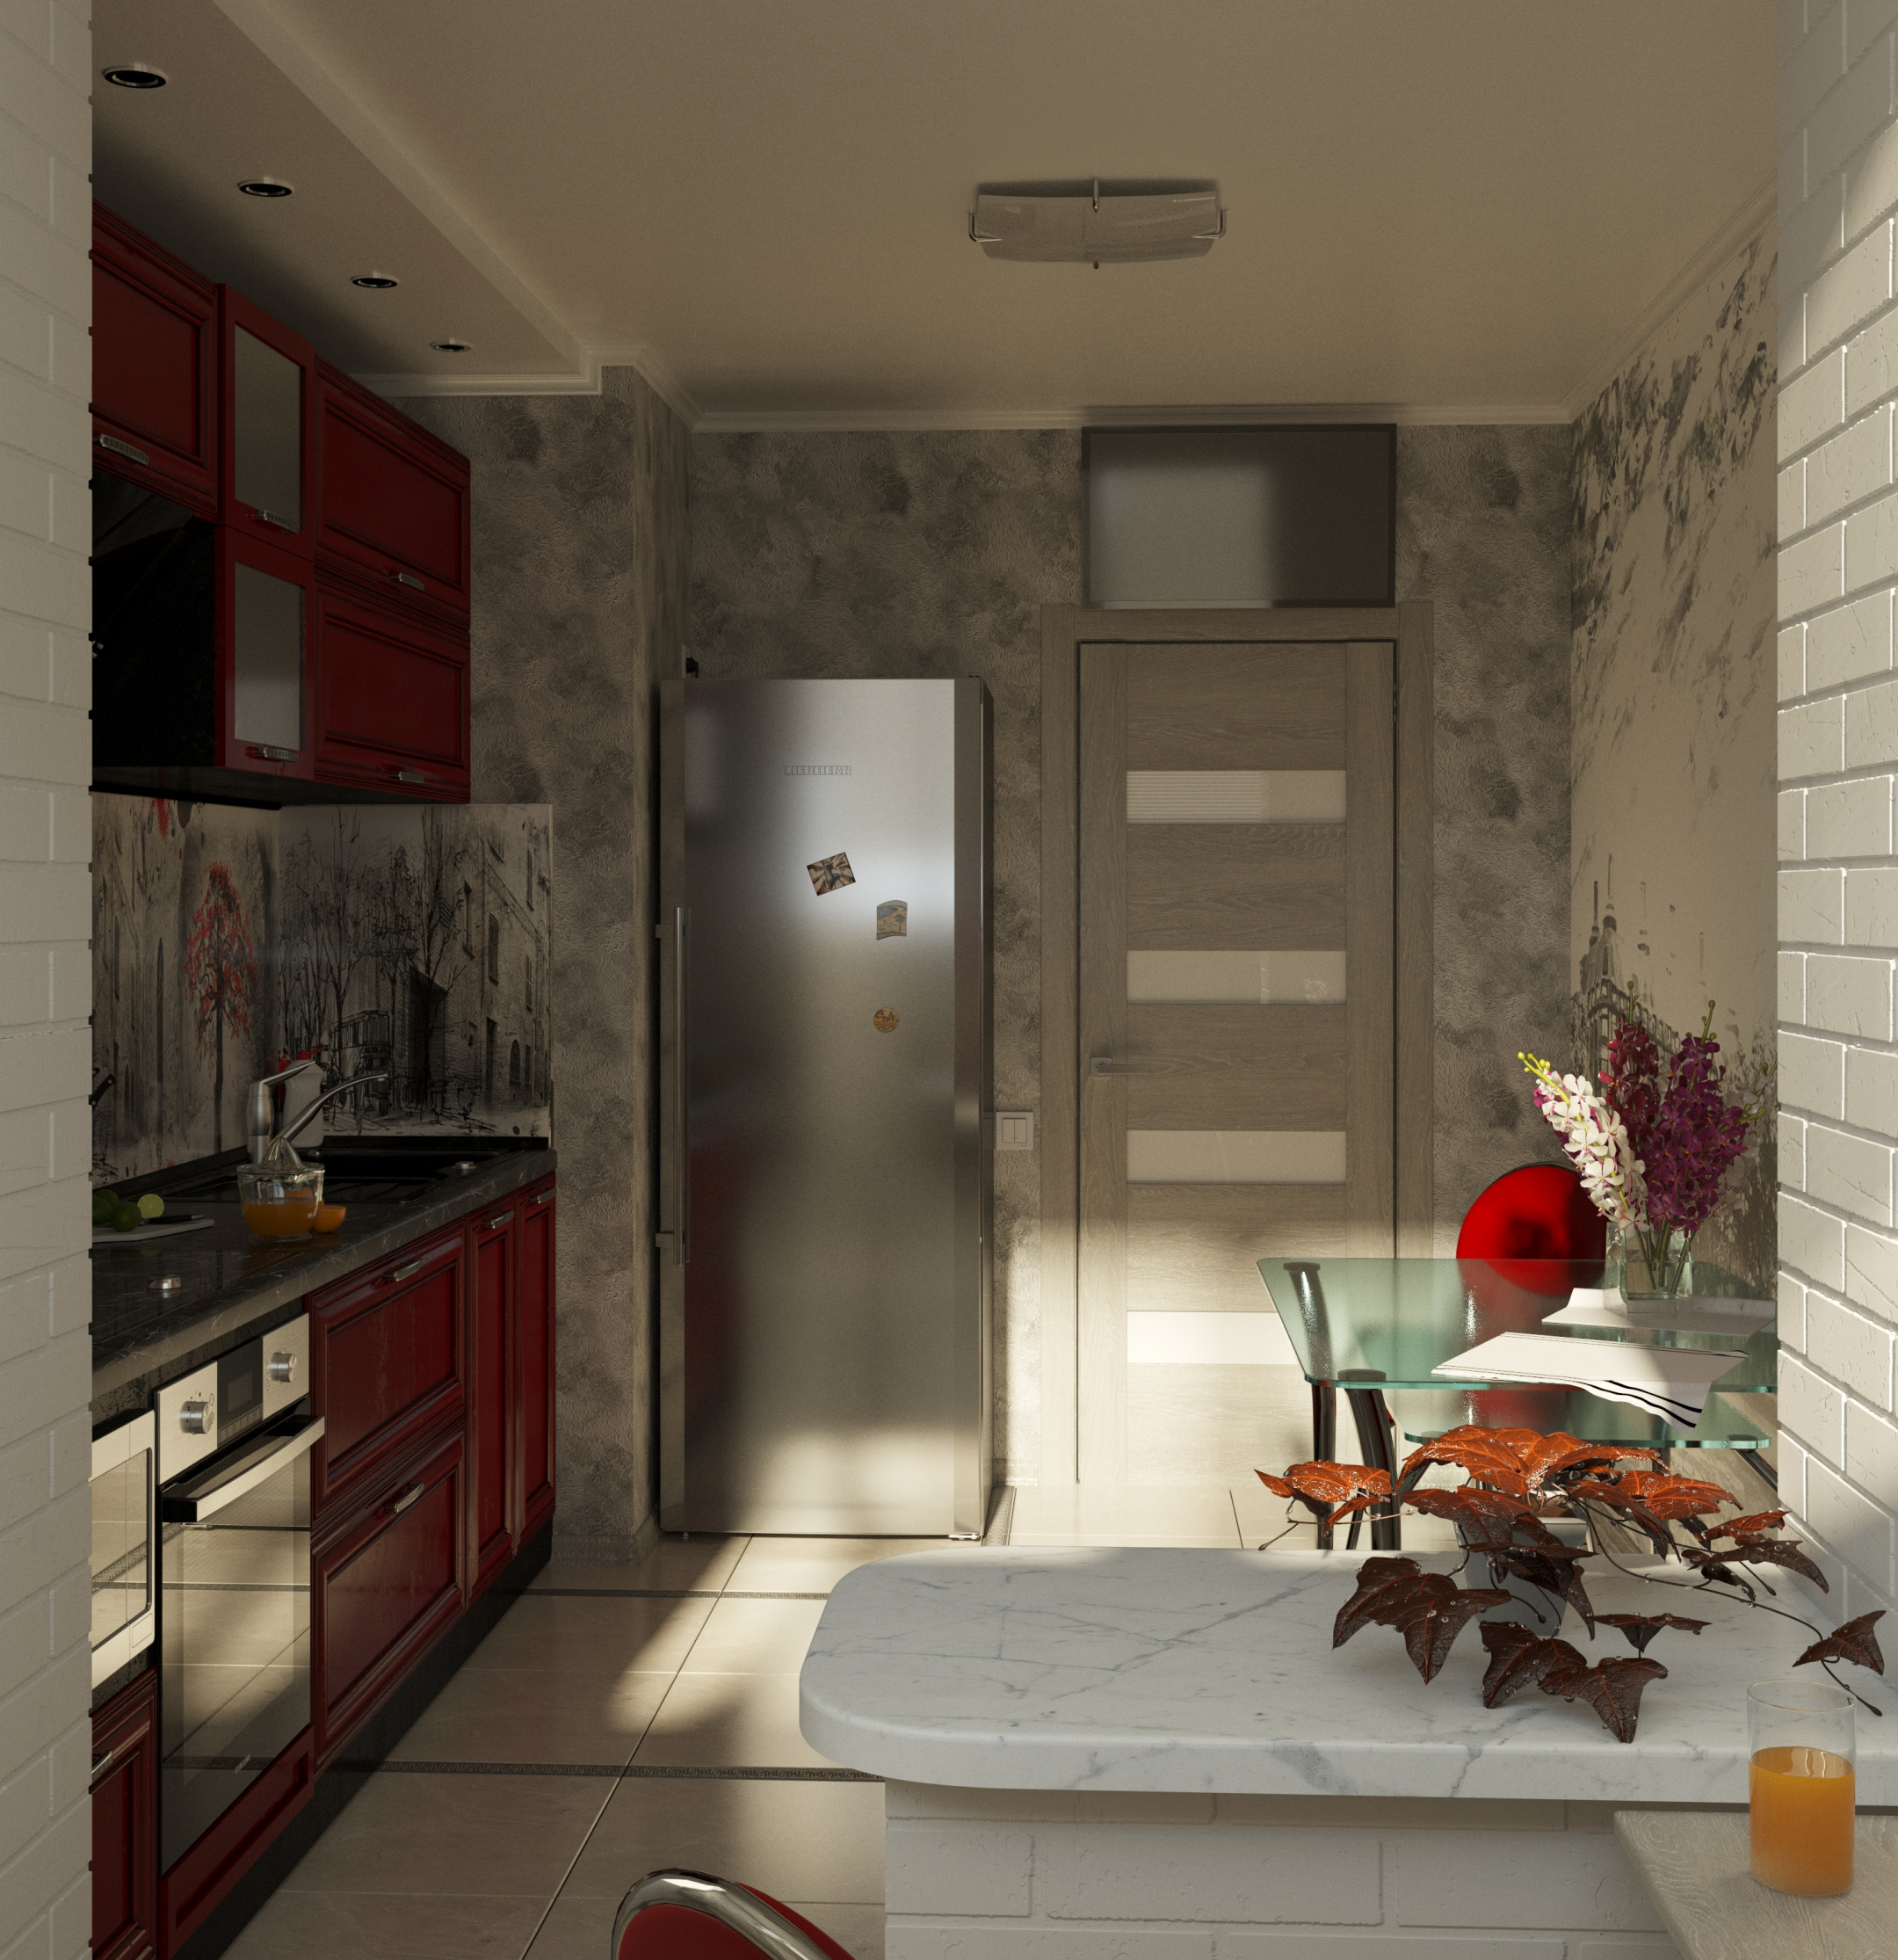 दो कमरे की रसोई 3d max corona render में प्रस्तुत छवि